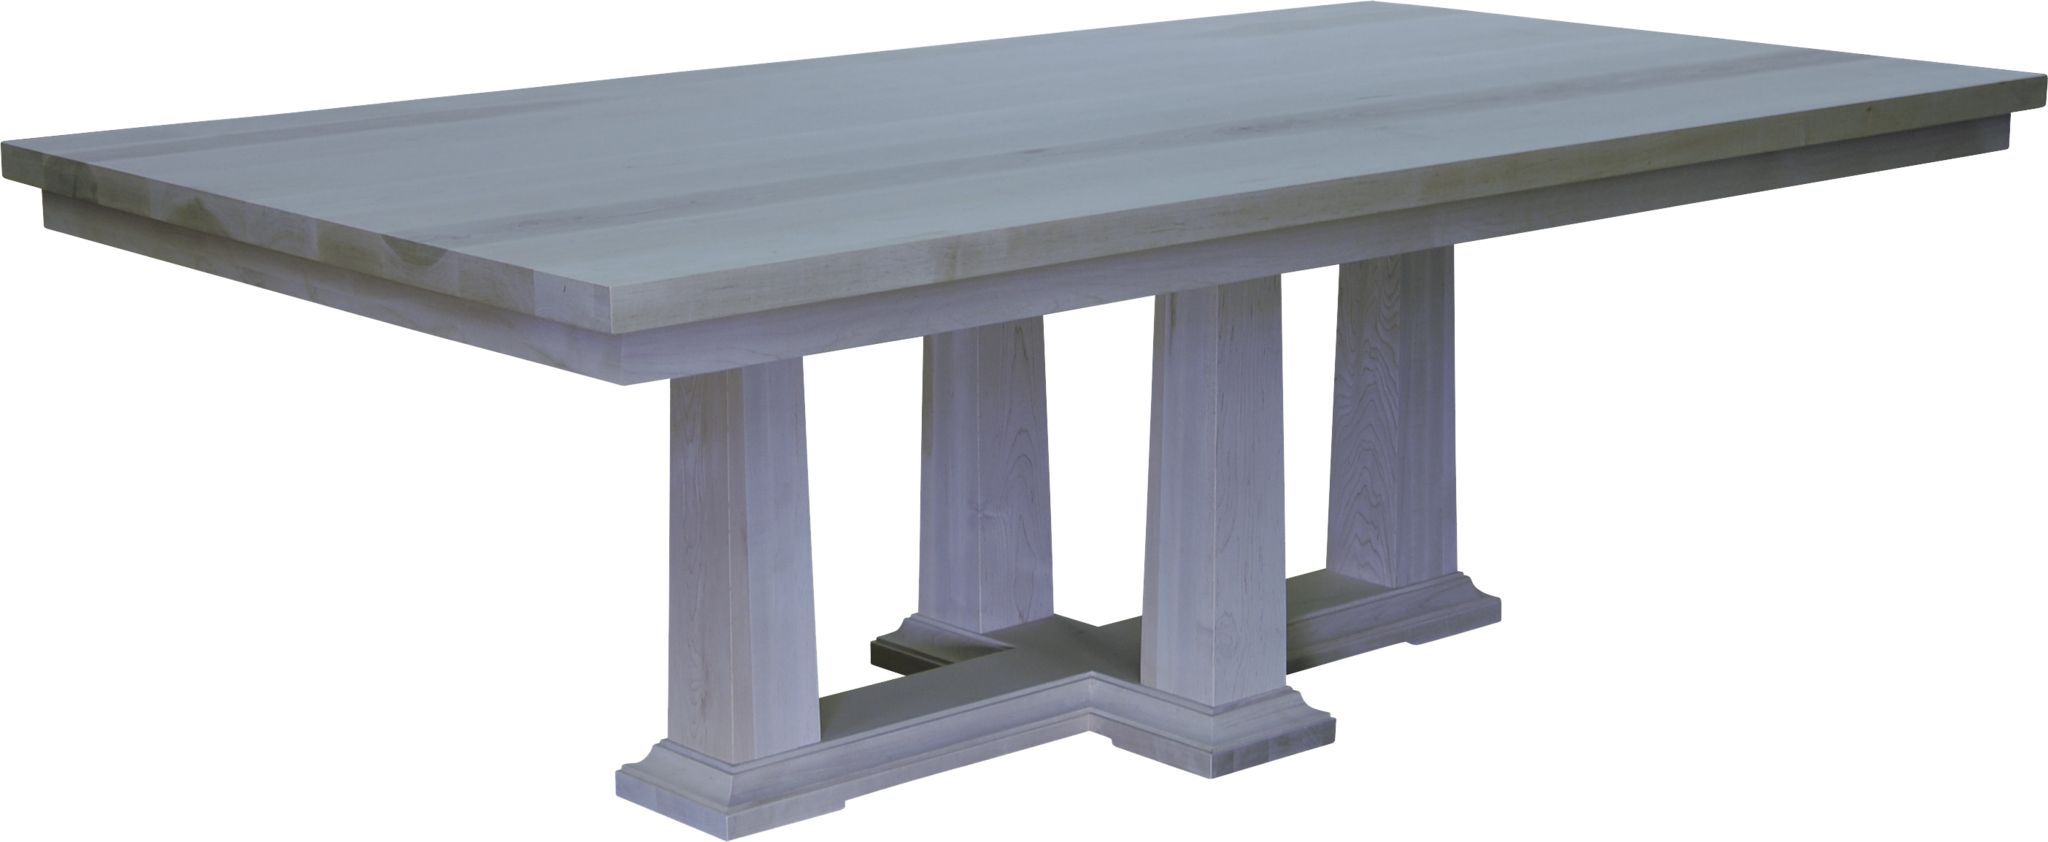 Parthenon Table